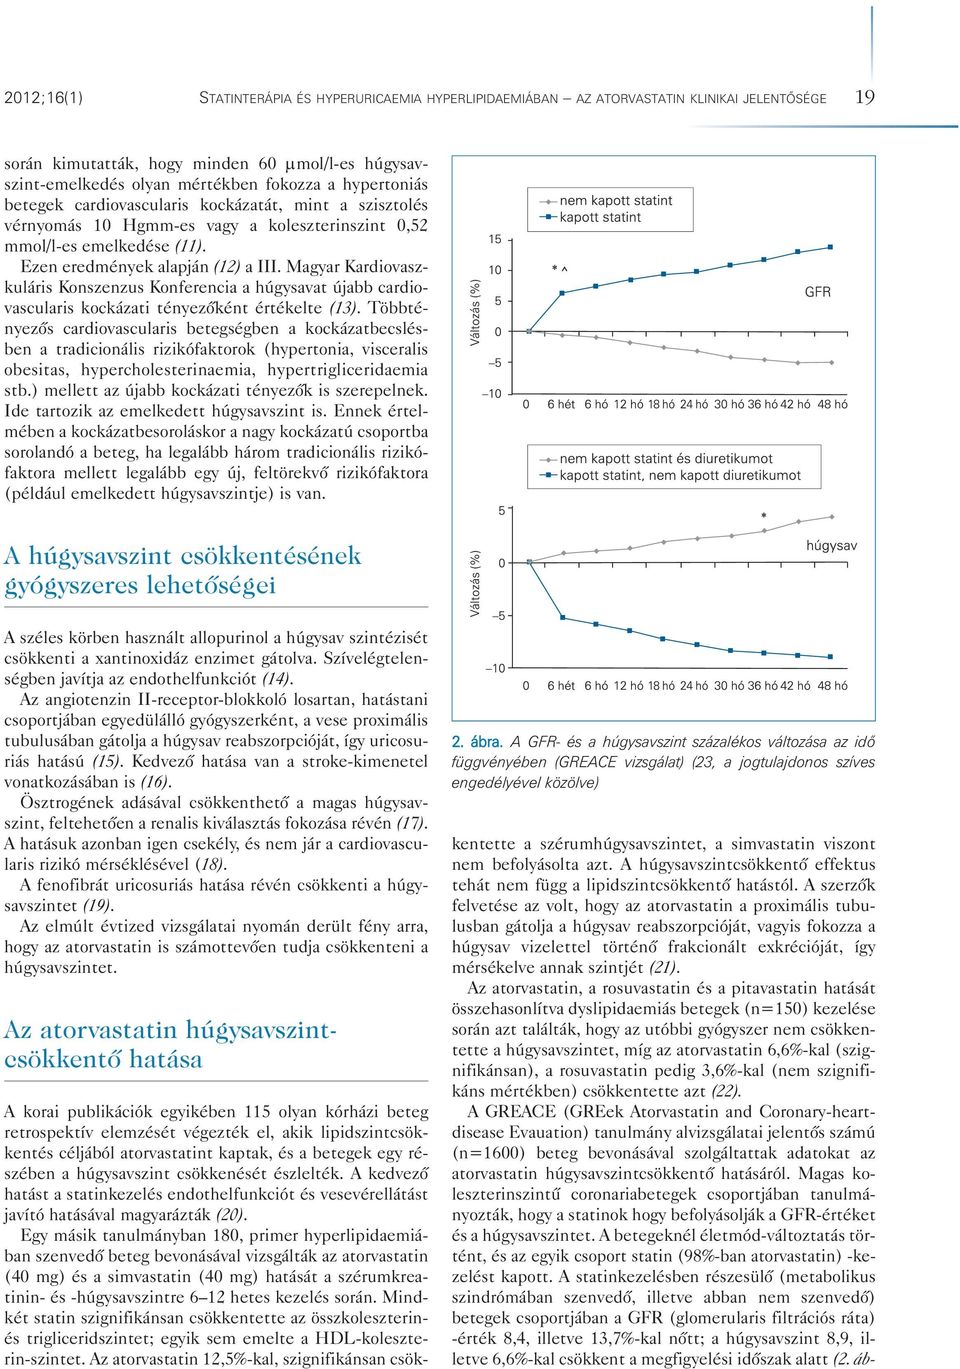 Magyar Kardiovaszkuláris Konszenzus Konferencia a húgysavat újabb cardiovascularis kockázati tényezôként értékelte (13).